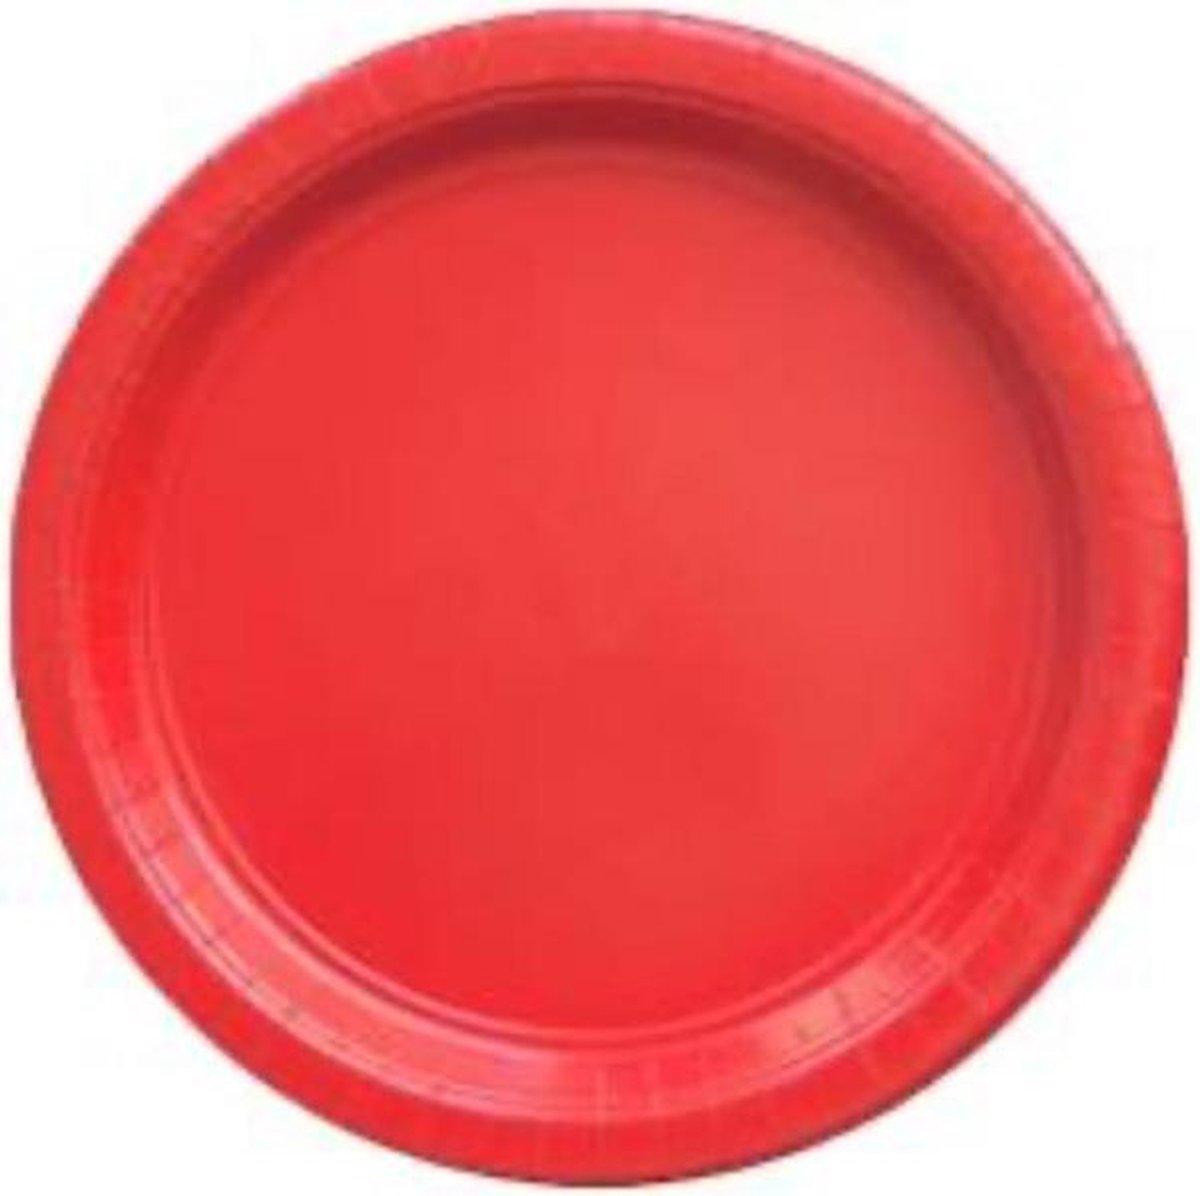 Kartonnen Bordjes rood 18cm 20st - Wegwerp borden - Feest/verjaardag/BBQ borden / Gebak bordjes maat